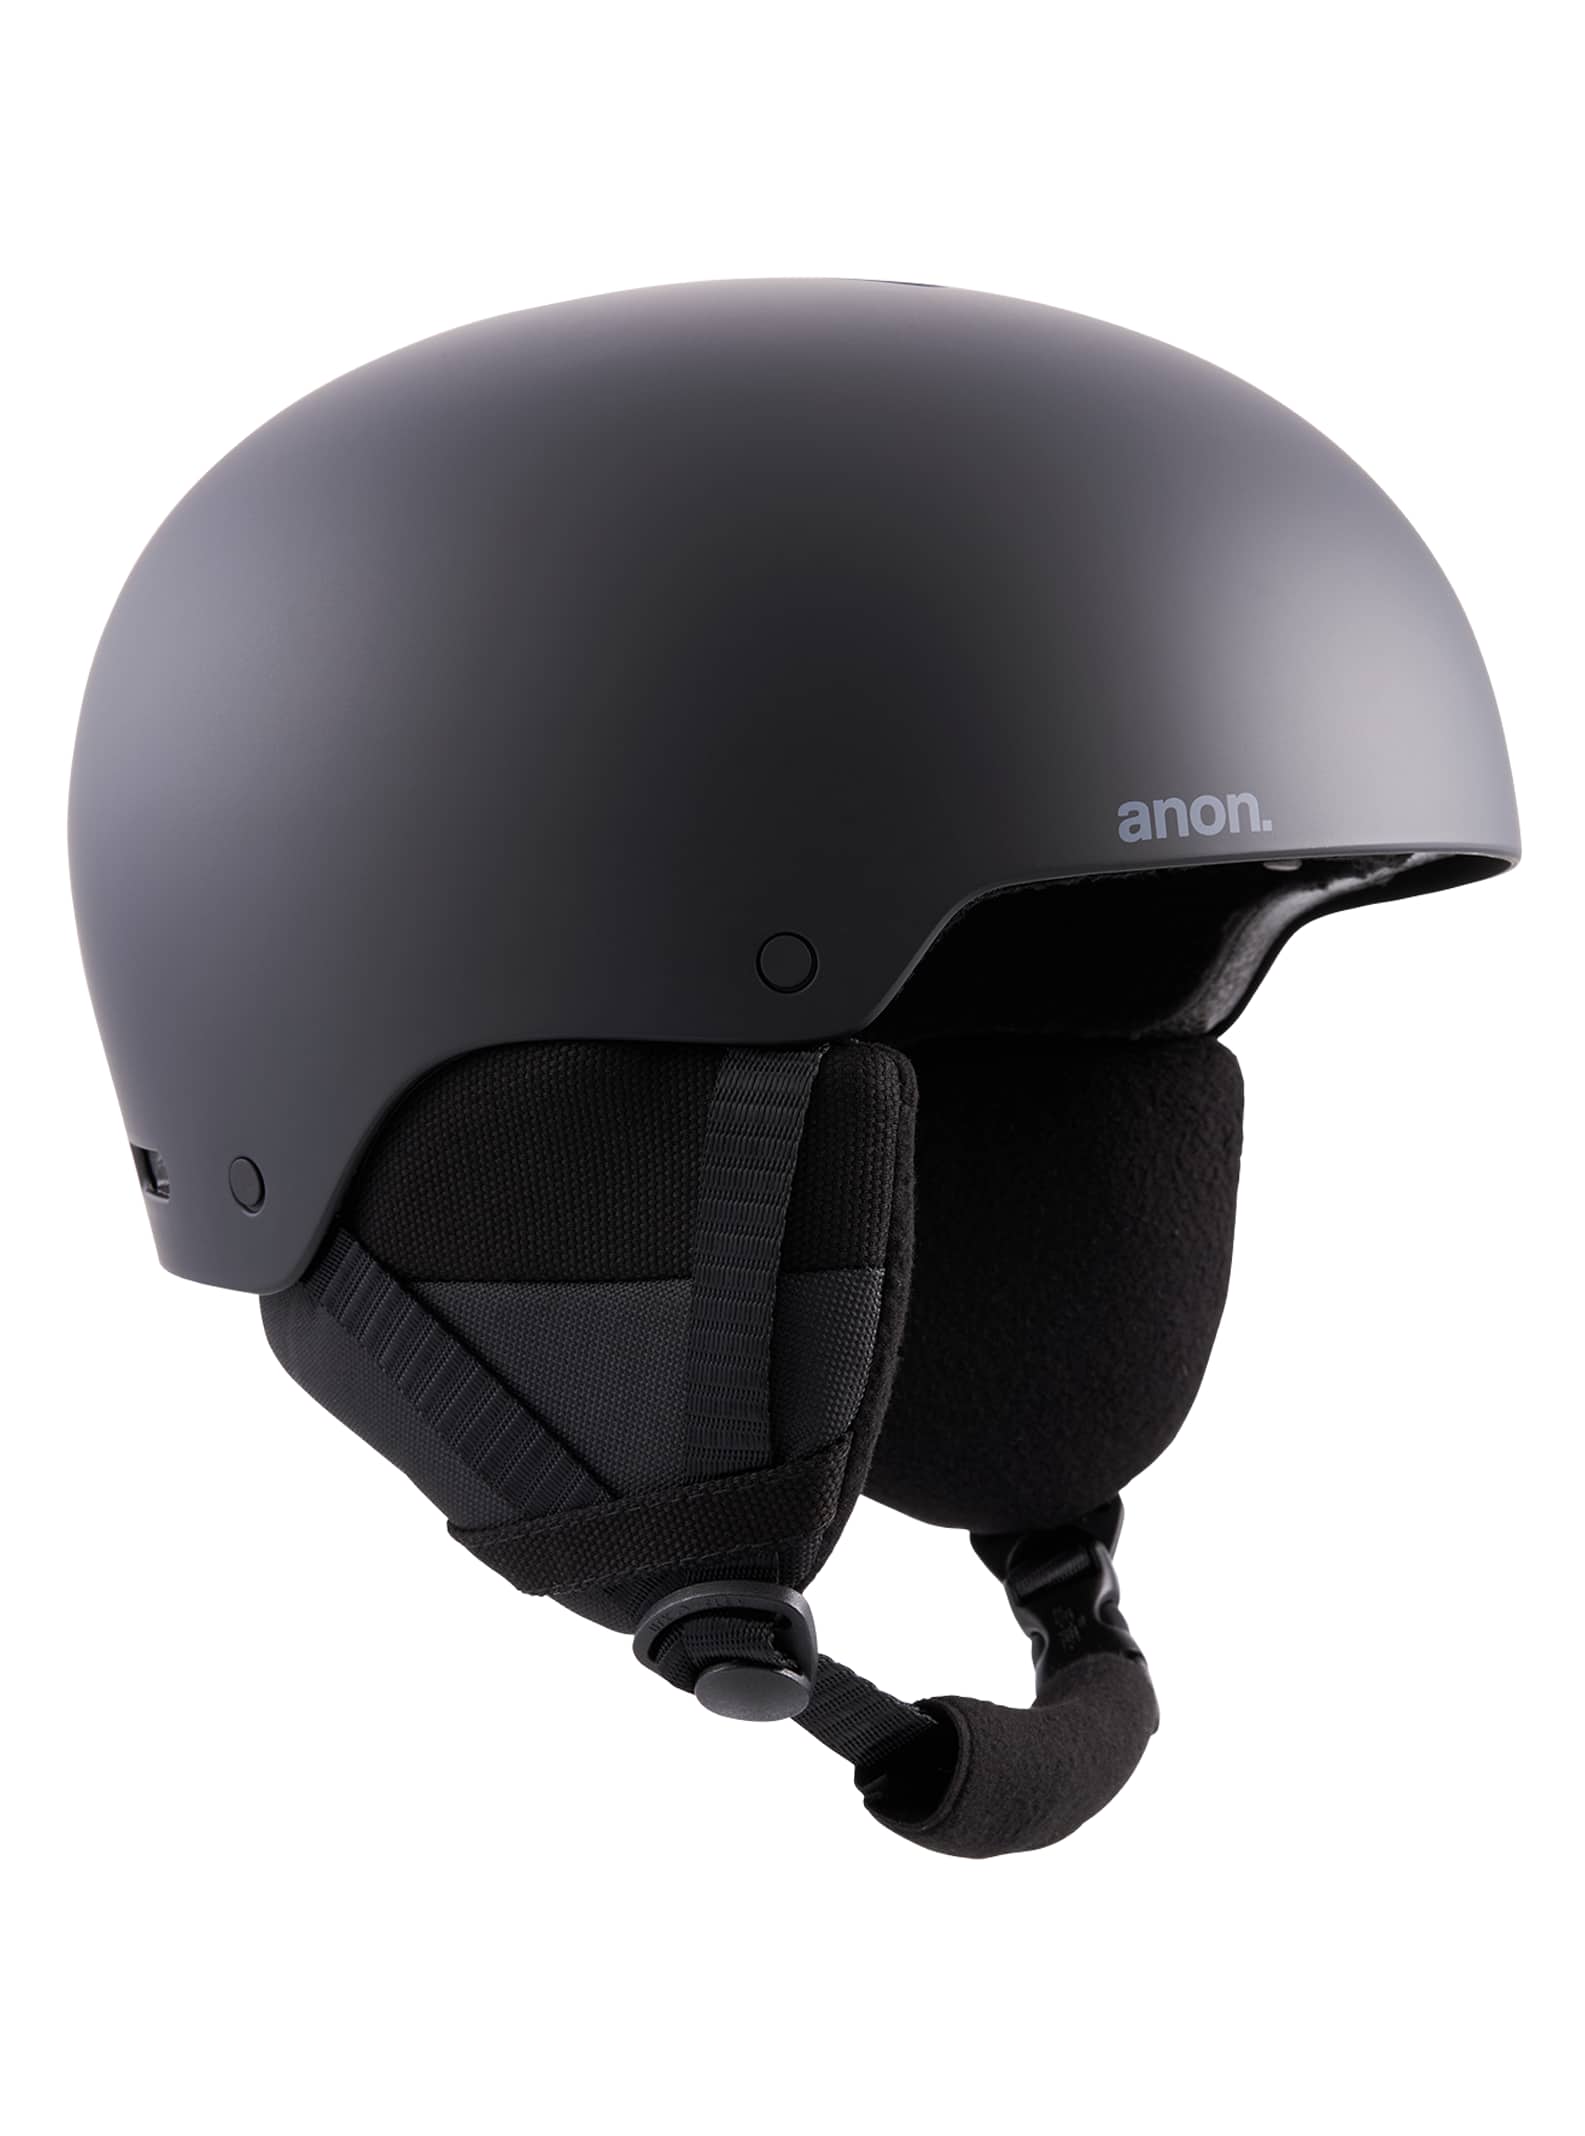 新品未使用 anon RODAN Sサイズ スノーボード スキーヘルメット黒